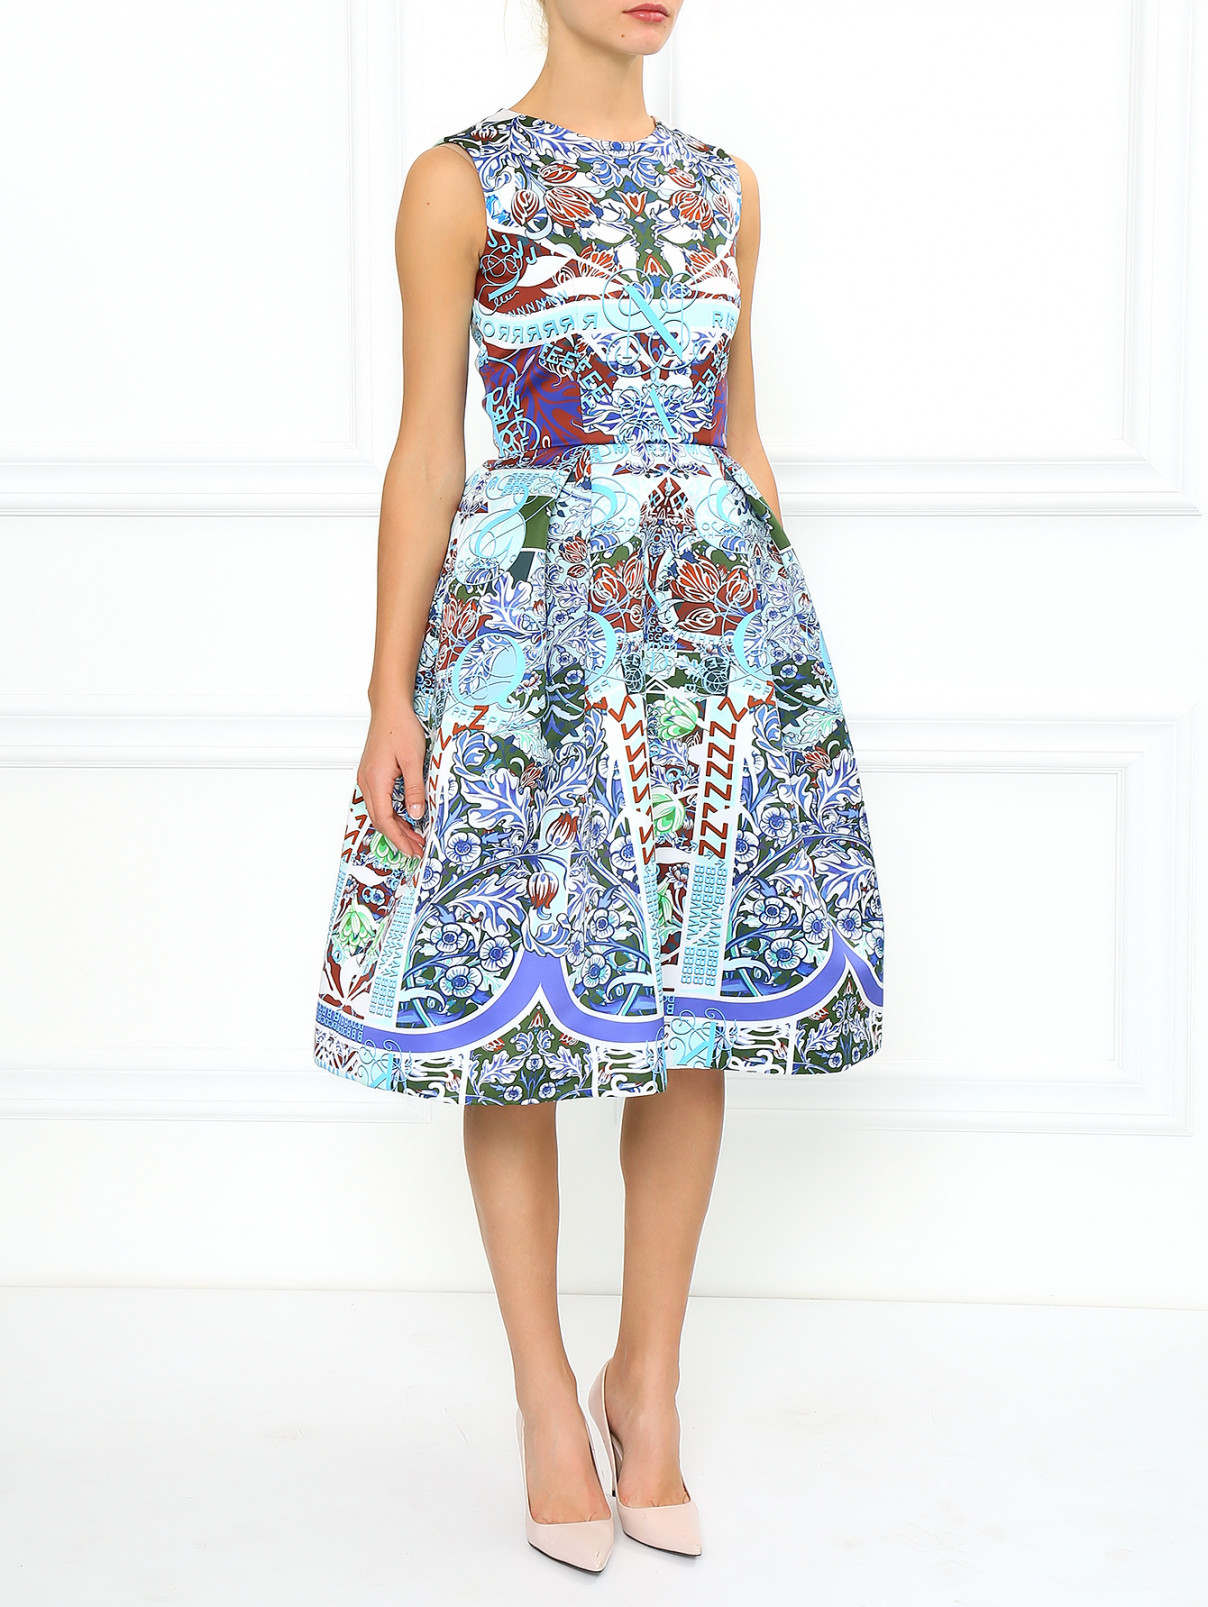 Платье с абстрактным принтом и боковыми карманами Mary Katrantzou  –  Модель Общий вид  – Цвет:  Синий